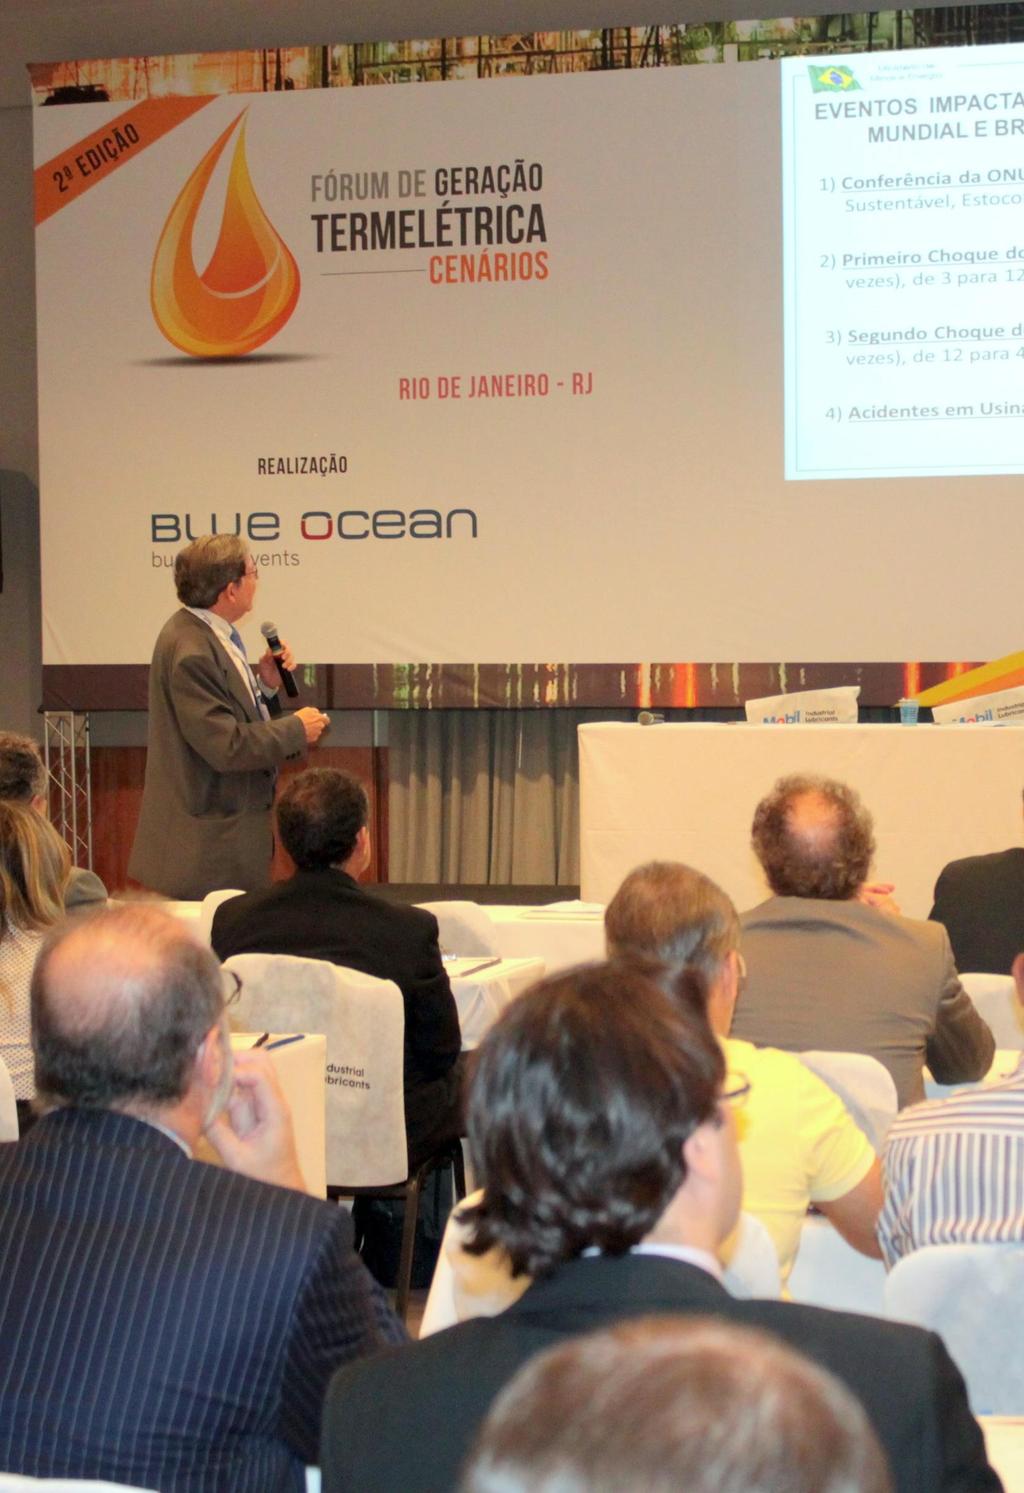 Caro Profissional, Entre os dias 18 e 19 de Maio de 2015 aconteceu no Rio de Janeiro a 2ª Edição do Fórum de Geração Termelétrica: Cenários.